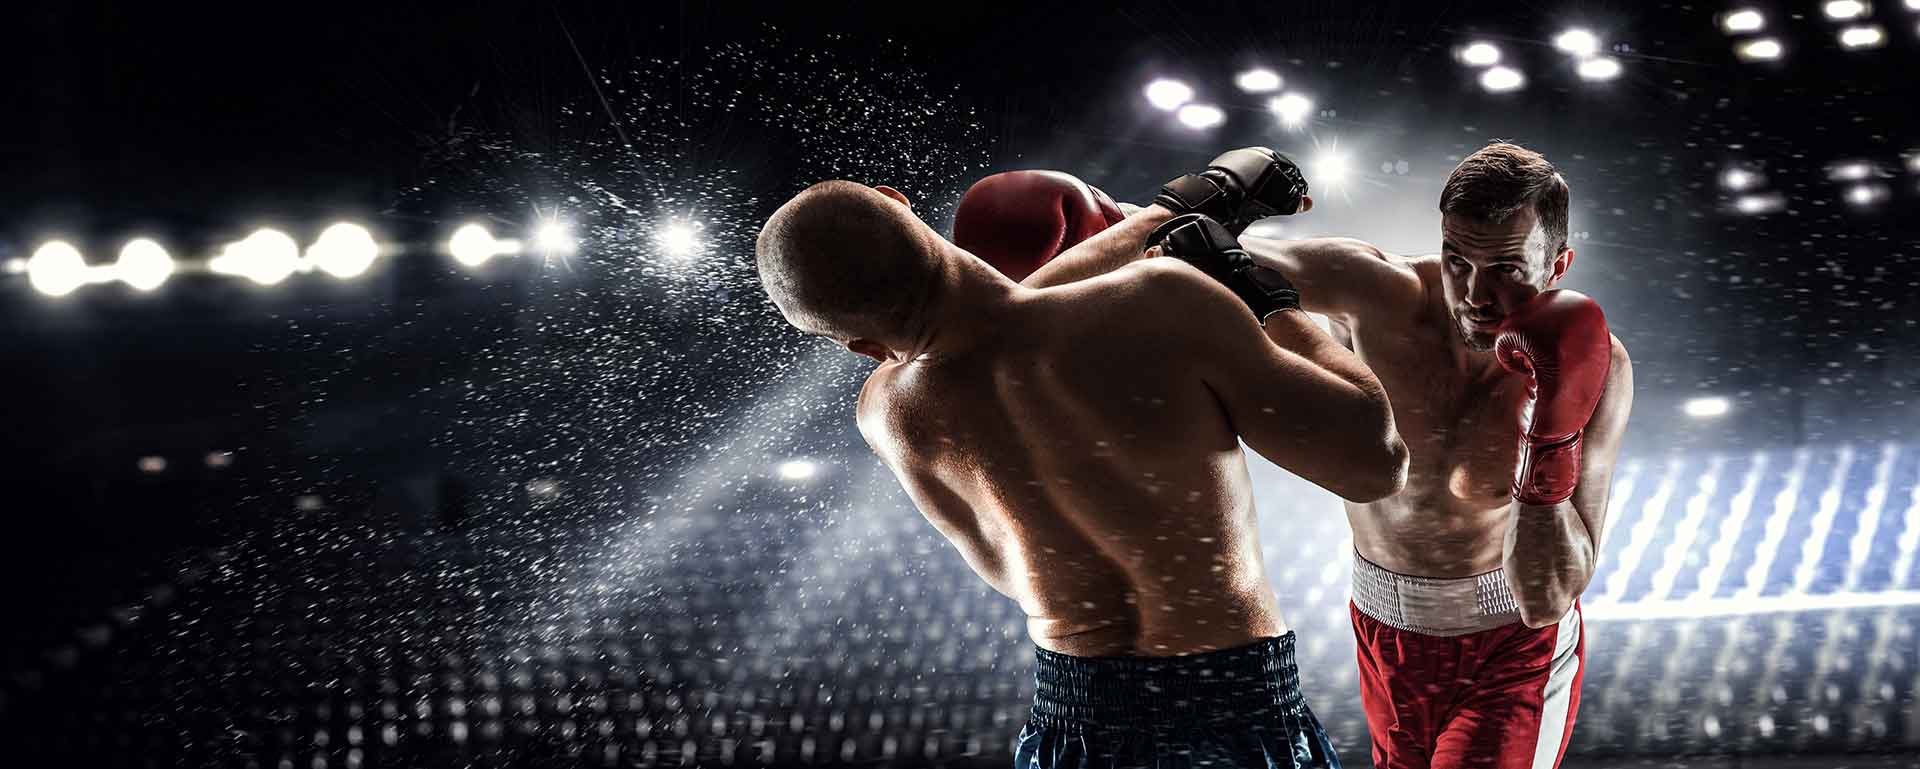 UFC276 cīņa par vidējā svara tituljostu: Israel Adesanya vs Jared Cannonier